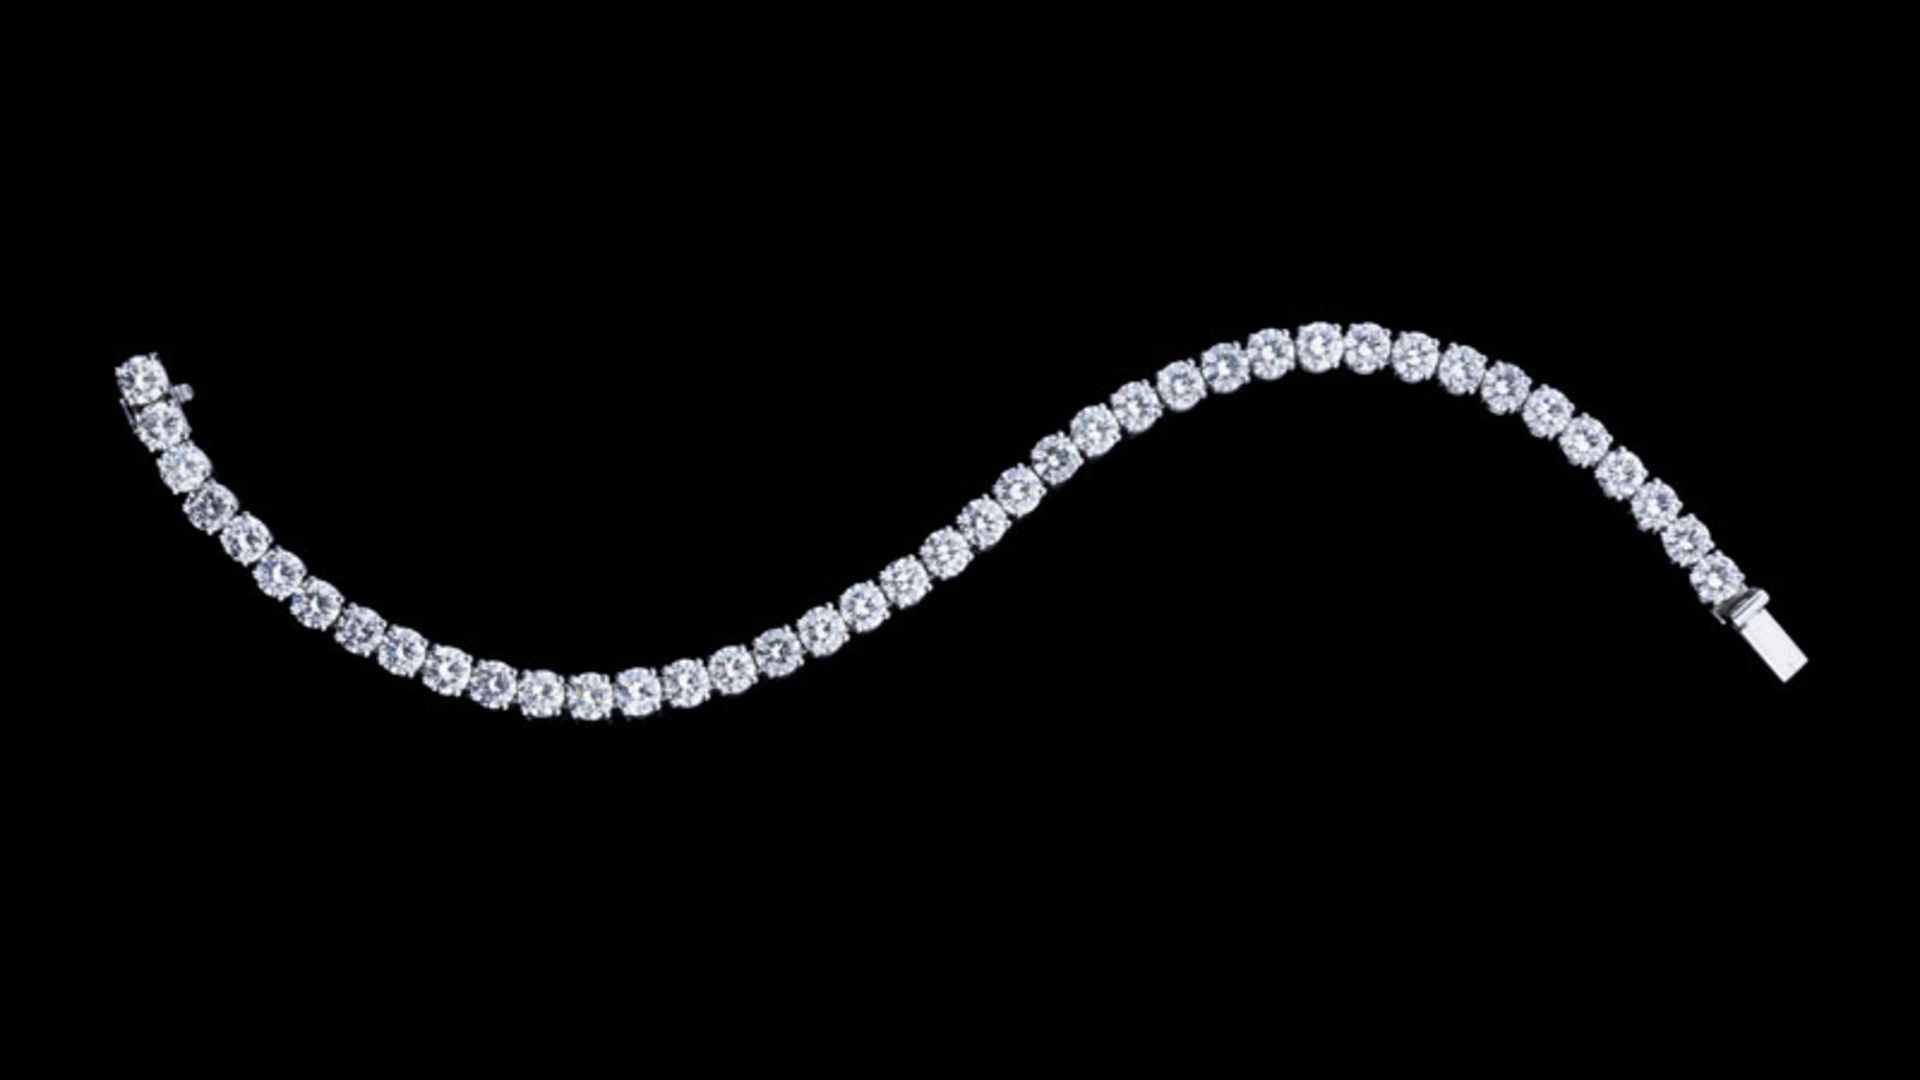 Bracelet rivière or gris 750 serti de diamants taille brillant